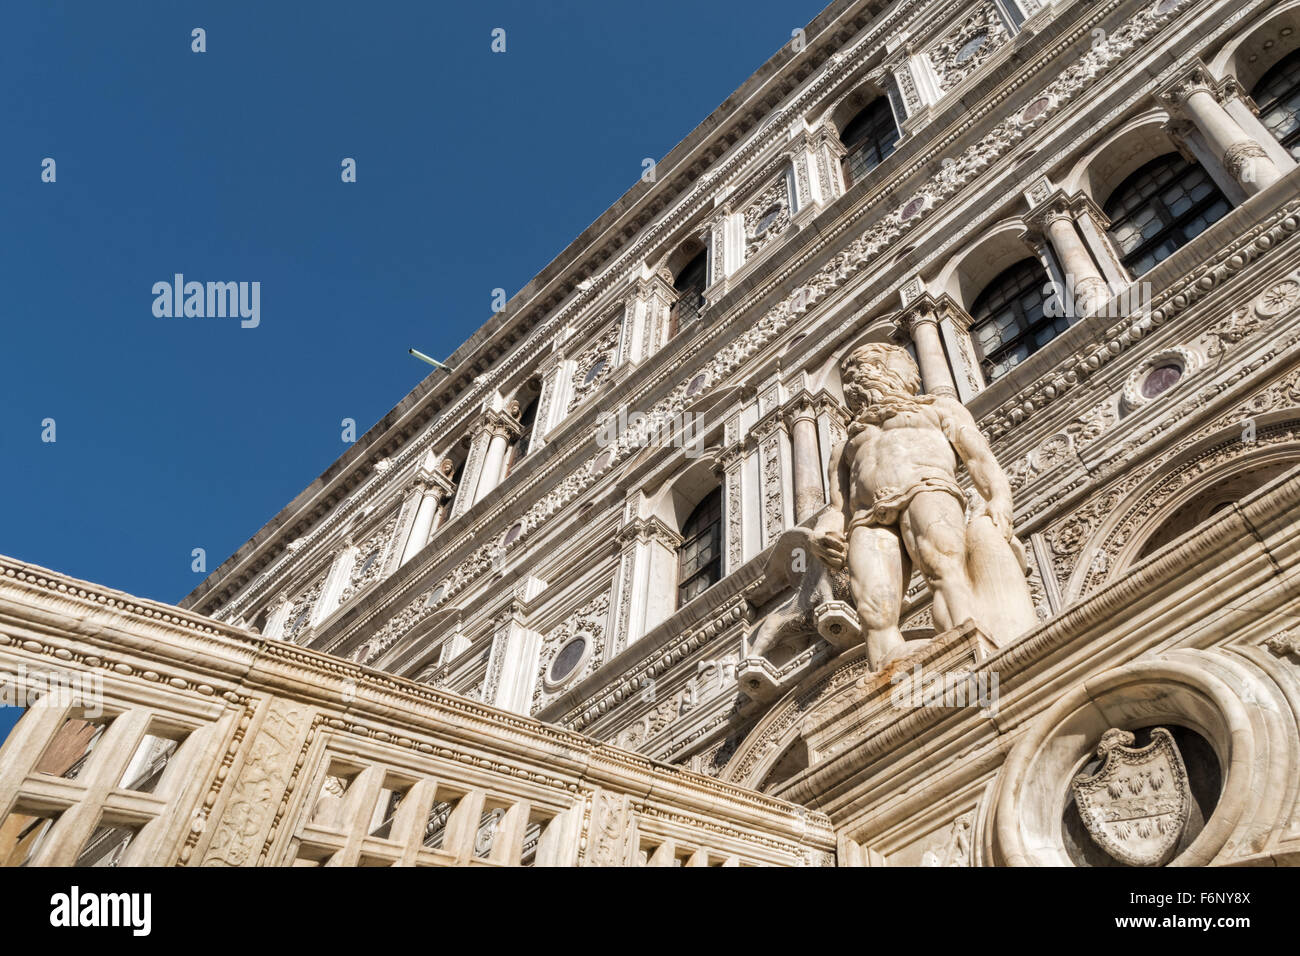 Dettagli dello scalone nel cortile di Palazzo Ducale in piazza San Marco, San Marco, Venezia. Foto Stock